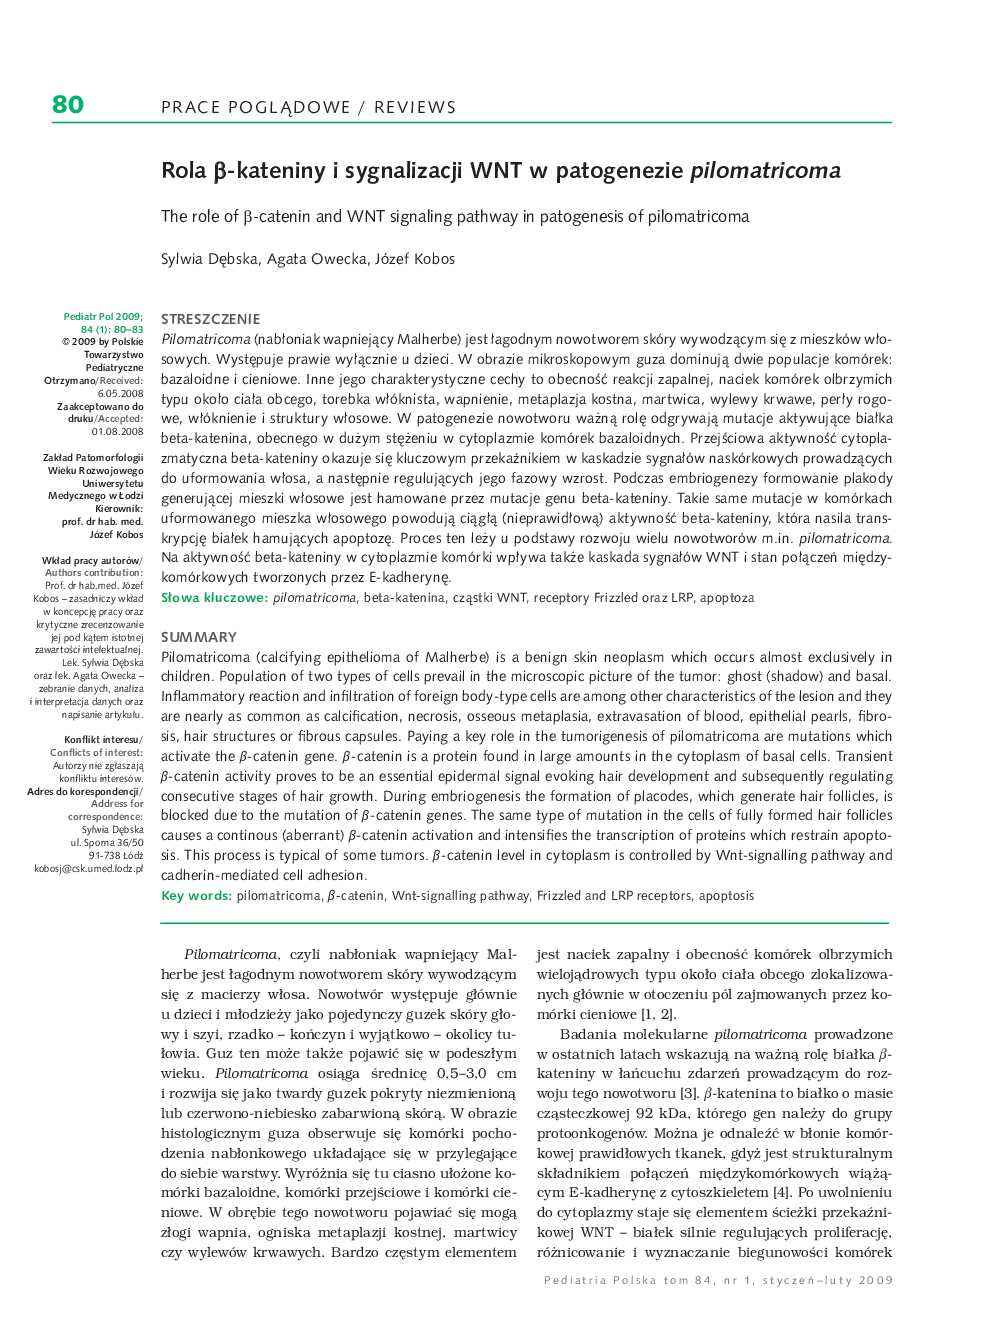 Rola Î²-kateniny i sygnalizacji WNT w patogenezie pilomatricoma